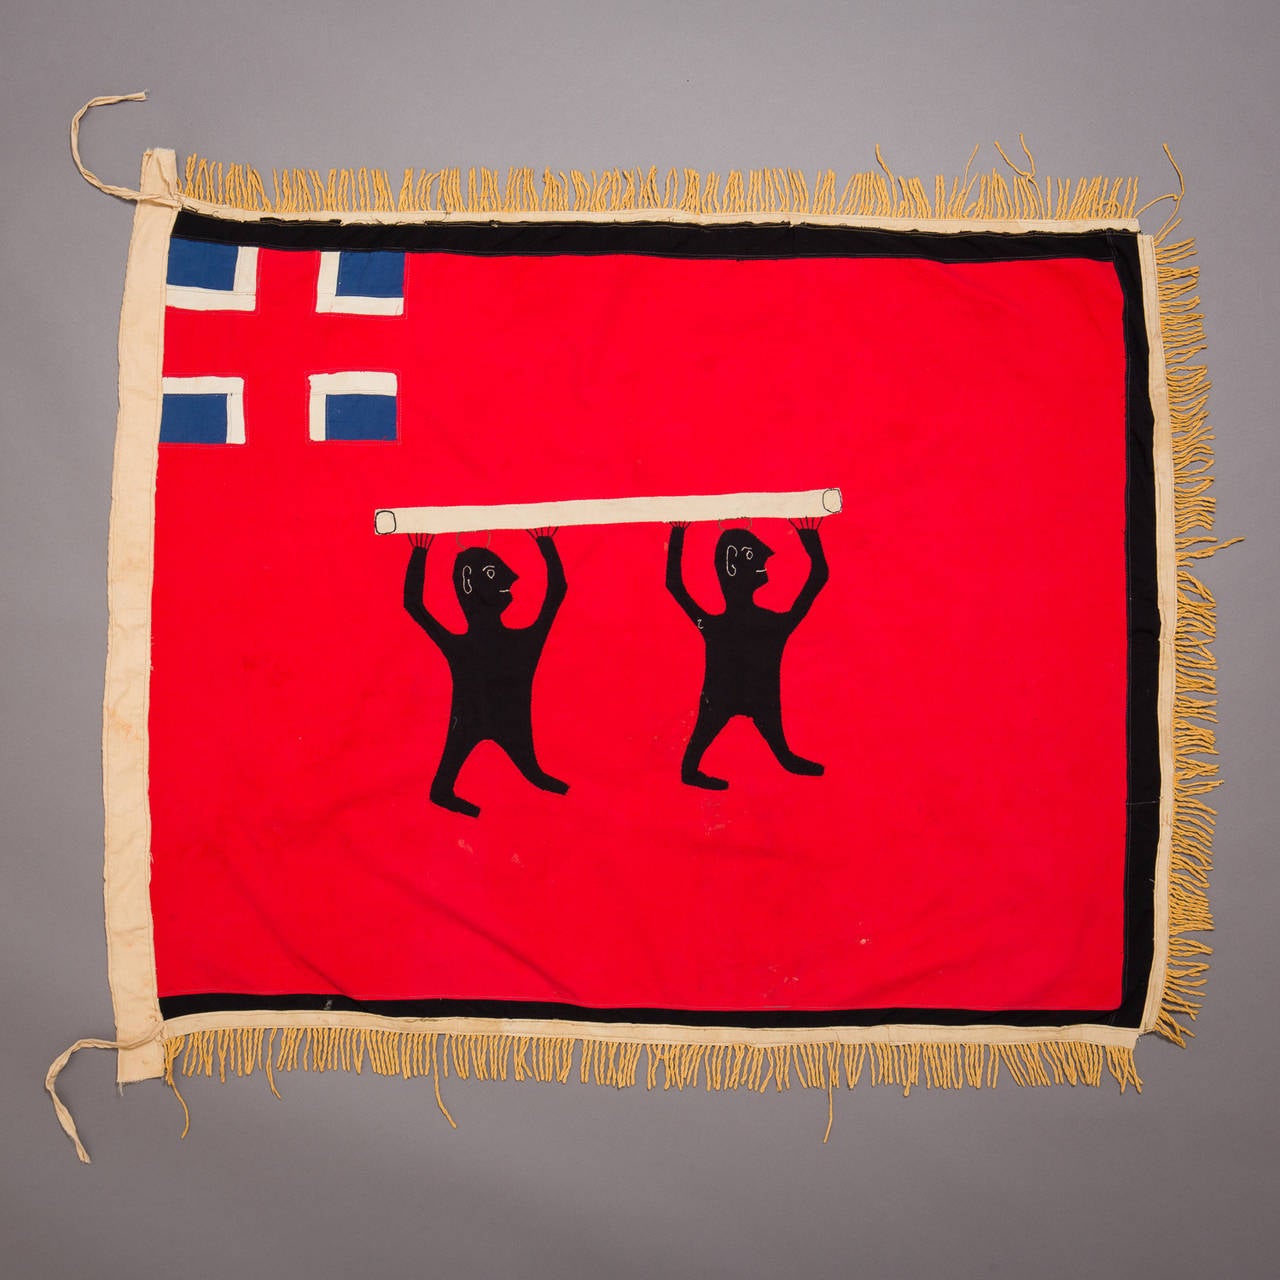 Eine große und grafisch beeindruckende Fante-Asafo-Flagge.

Die Fante-Flaggen stellen die Verschmelzung zweier kultureller Traditionen dar: der Tradition der Akan, Sprichwörter mit visuellen Bildern zu verbinden, und der europäischen heraldischen